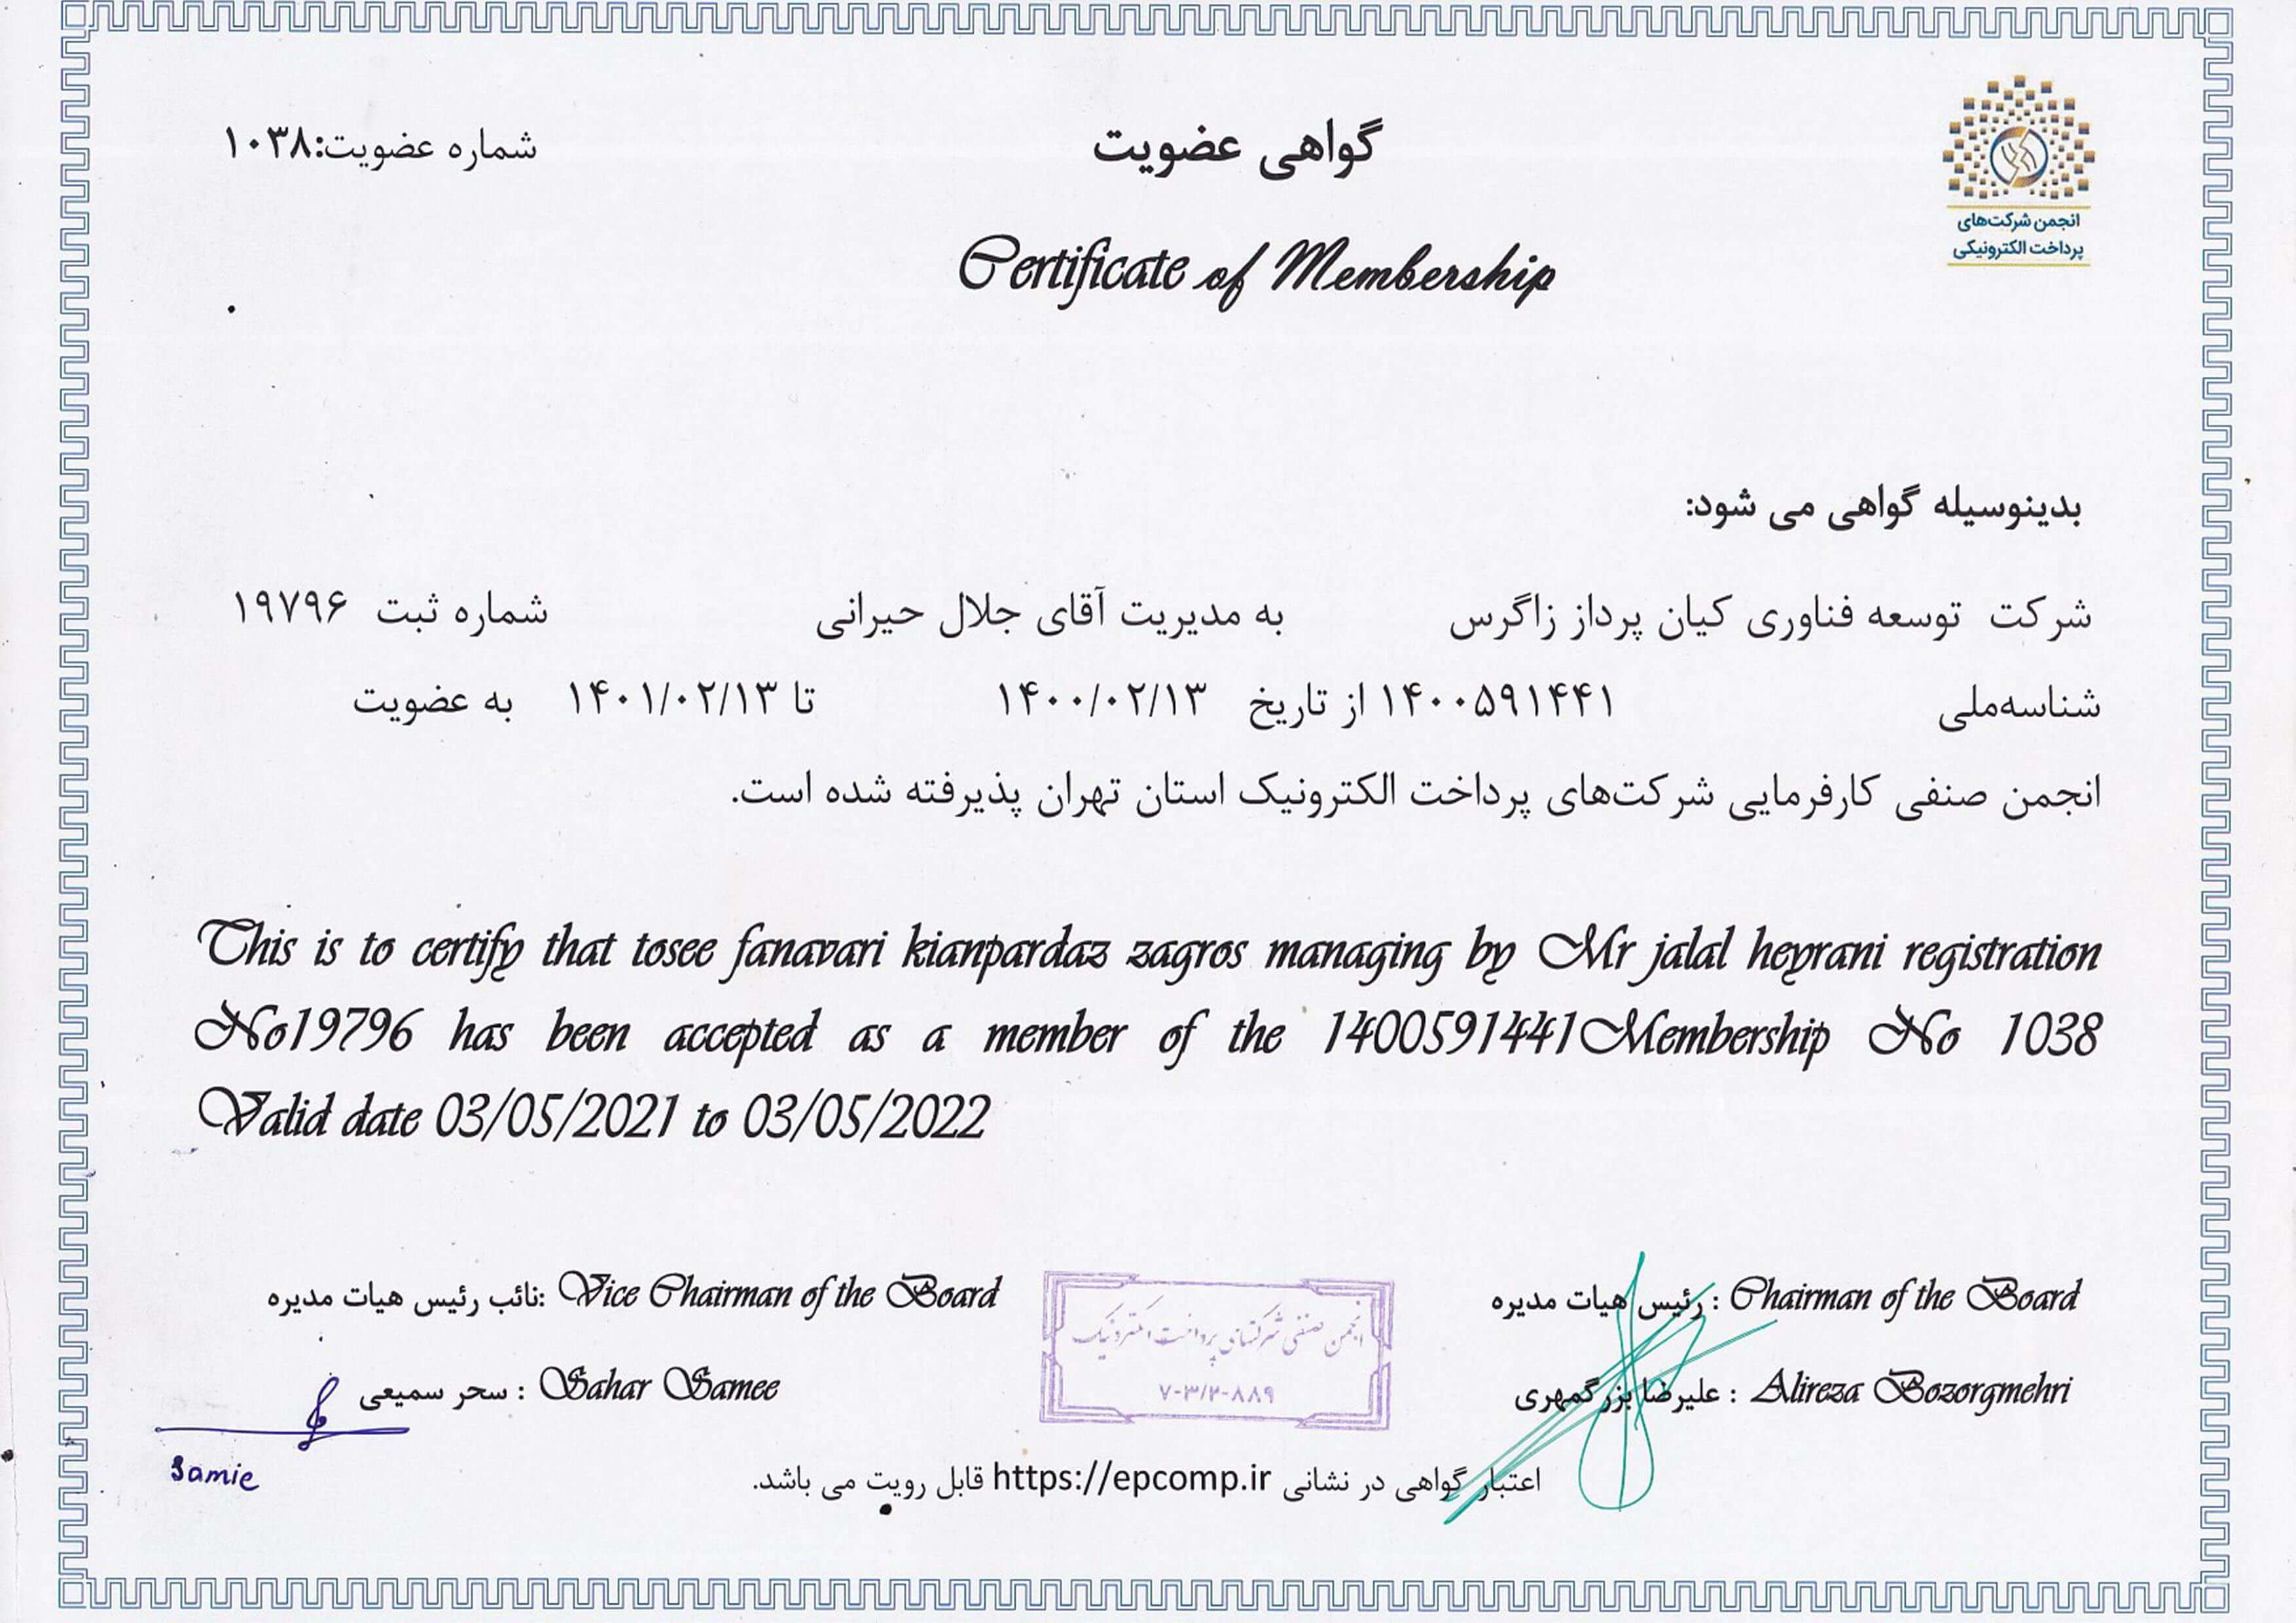 انجمن صنفی کارفرمایی شرکت های پرداخت الکترونیک استان تهران